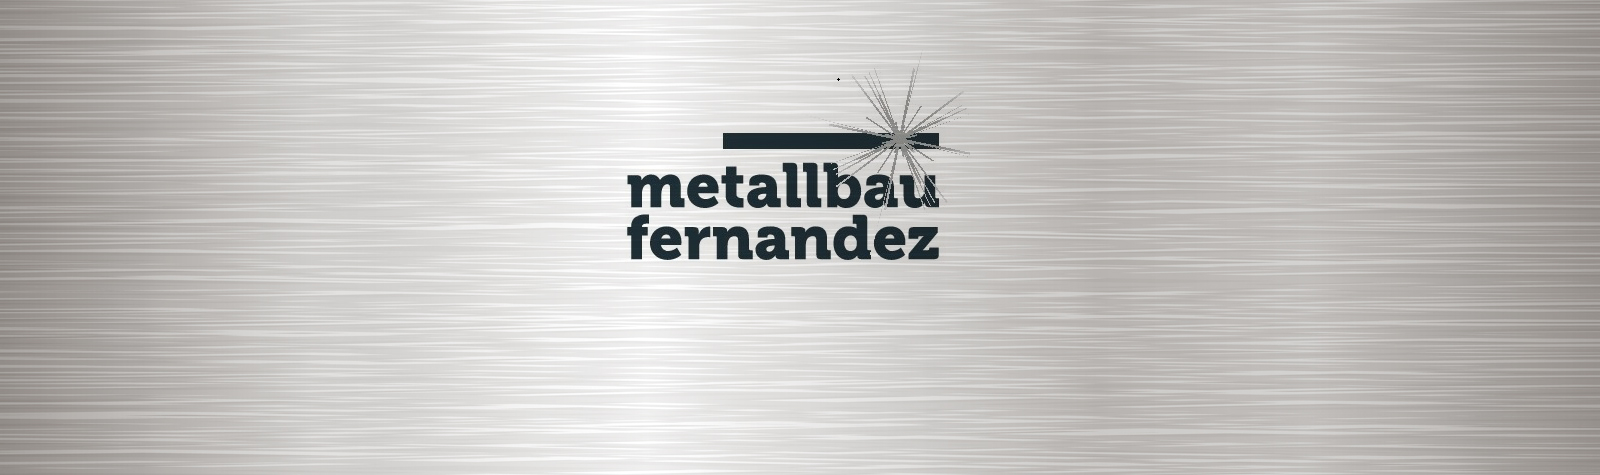 Metallbau Fernandez, Inh. Tristan Fernandez – Metallbauer in Traben-Trarbach